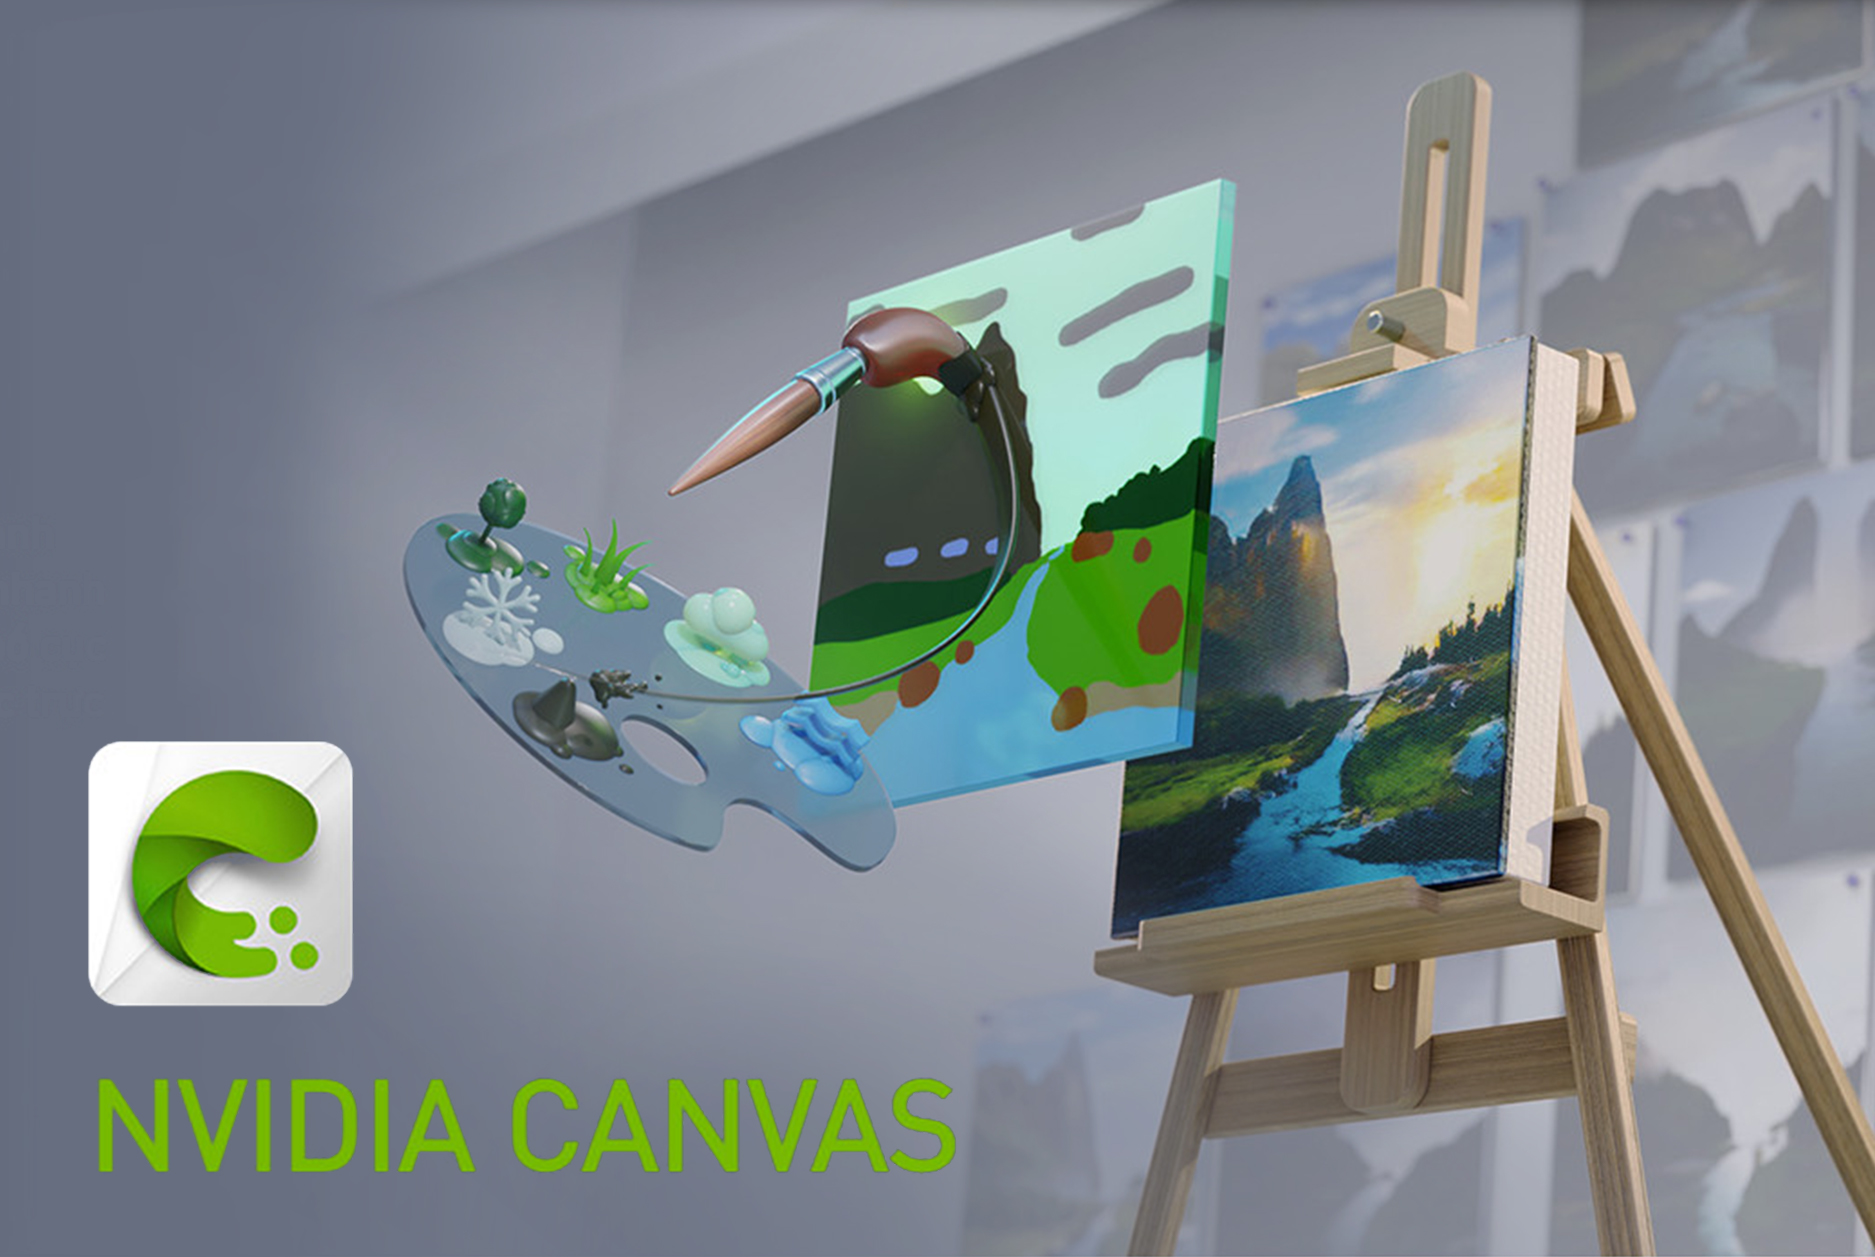 NVIDIA Canvas là công cụ vẽ hình chuyên nghiệp của NVIDIA, giúp người dùng dễ dàng tạo ra những bức tranh sống động và ấn tượng. Cùng khám phá những hình ảnh tuyệt đẹp được vẽ bằng NVIDIA Canvas để tìm ra cách sáng tạo riêng của mình!